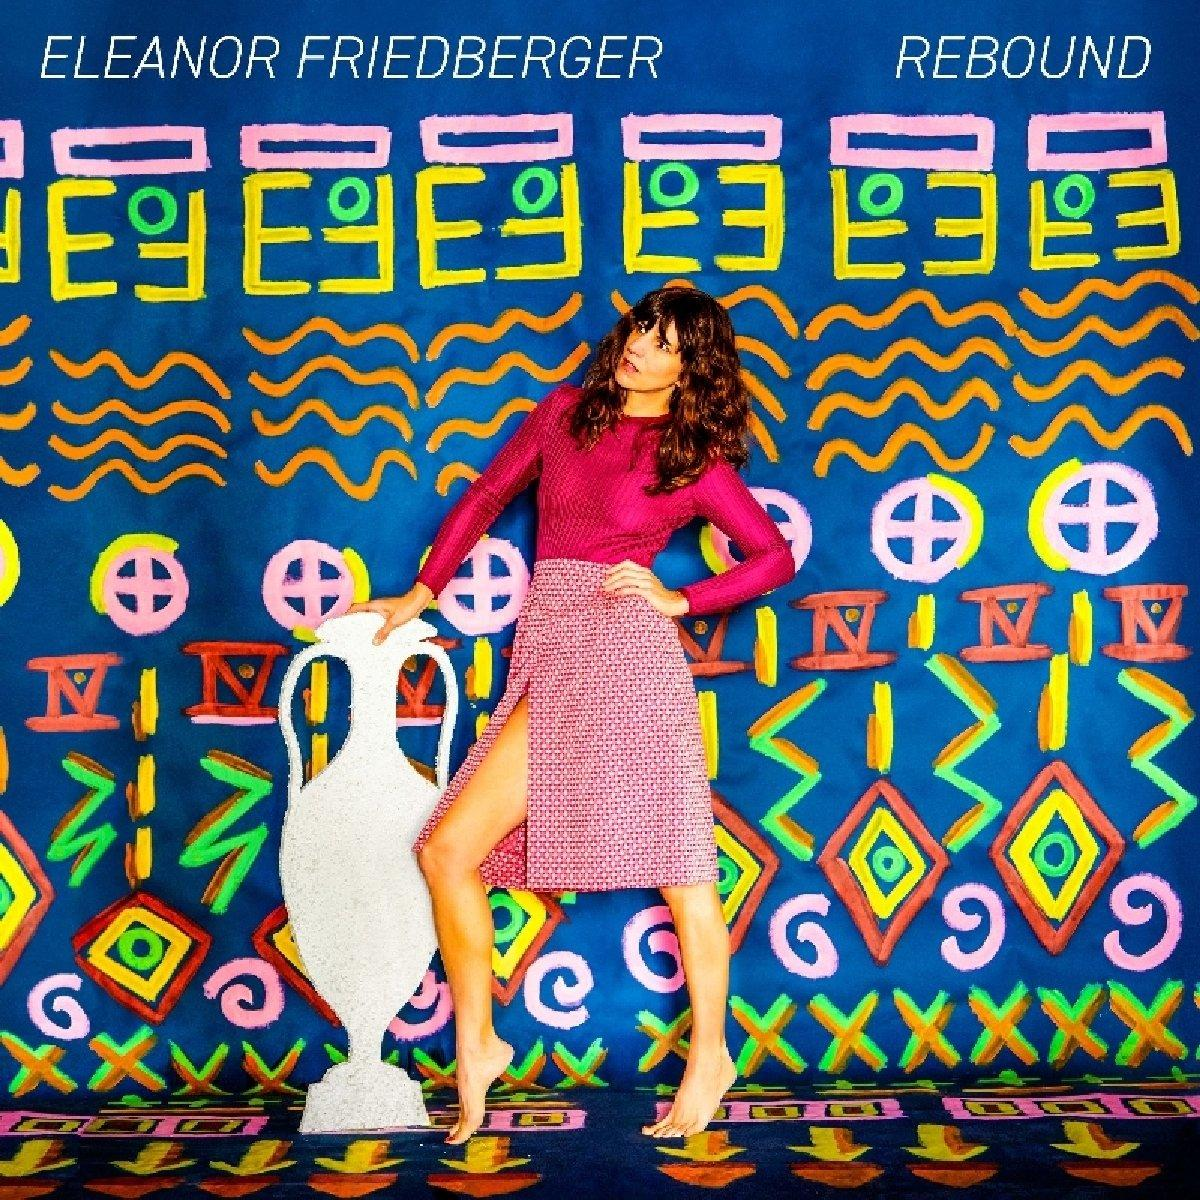 - Rebound Friedberger (CD) - Eleanor